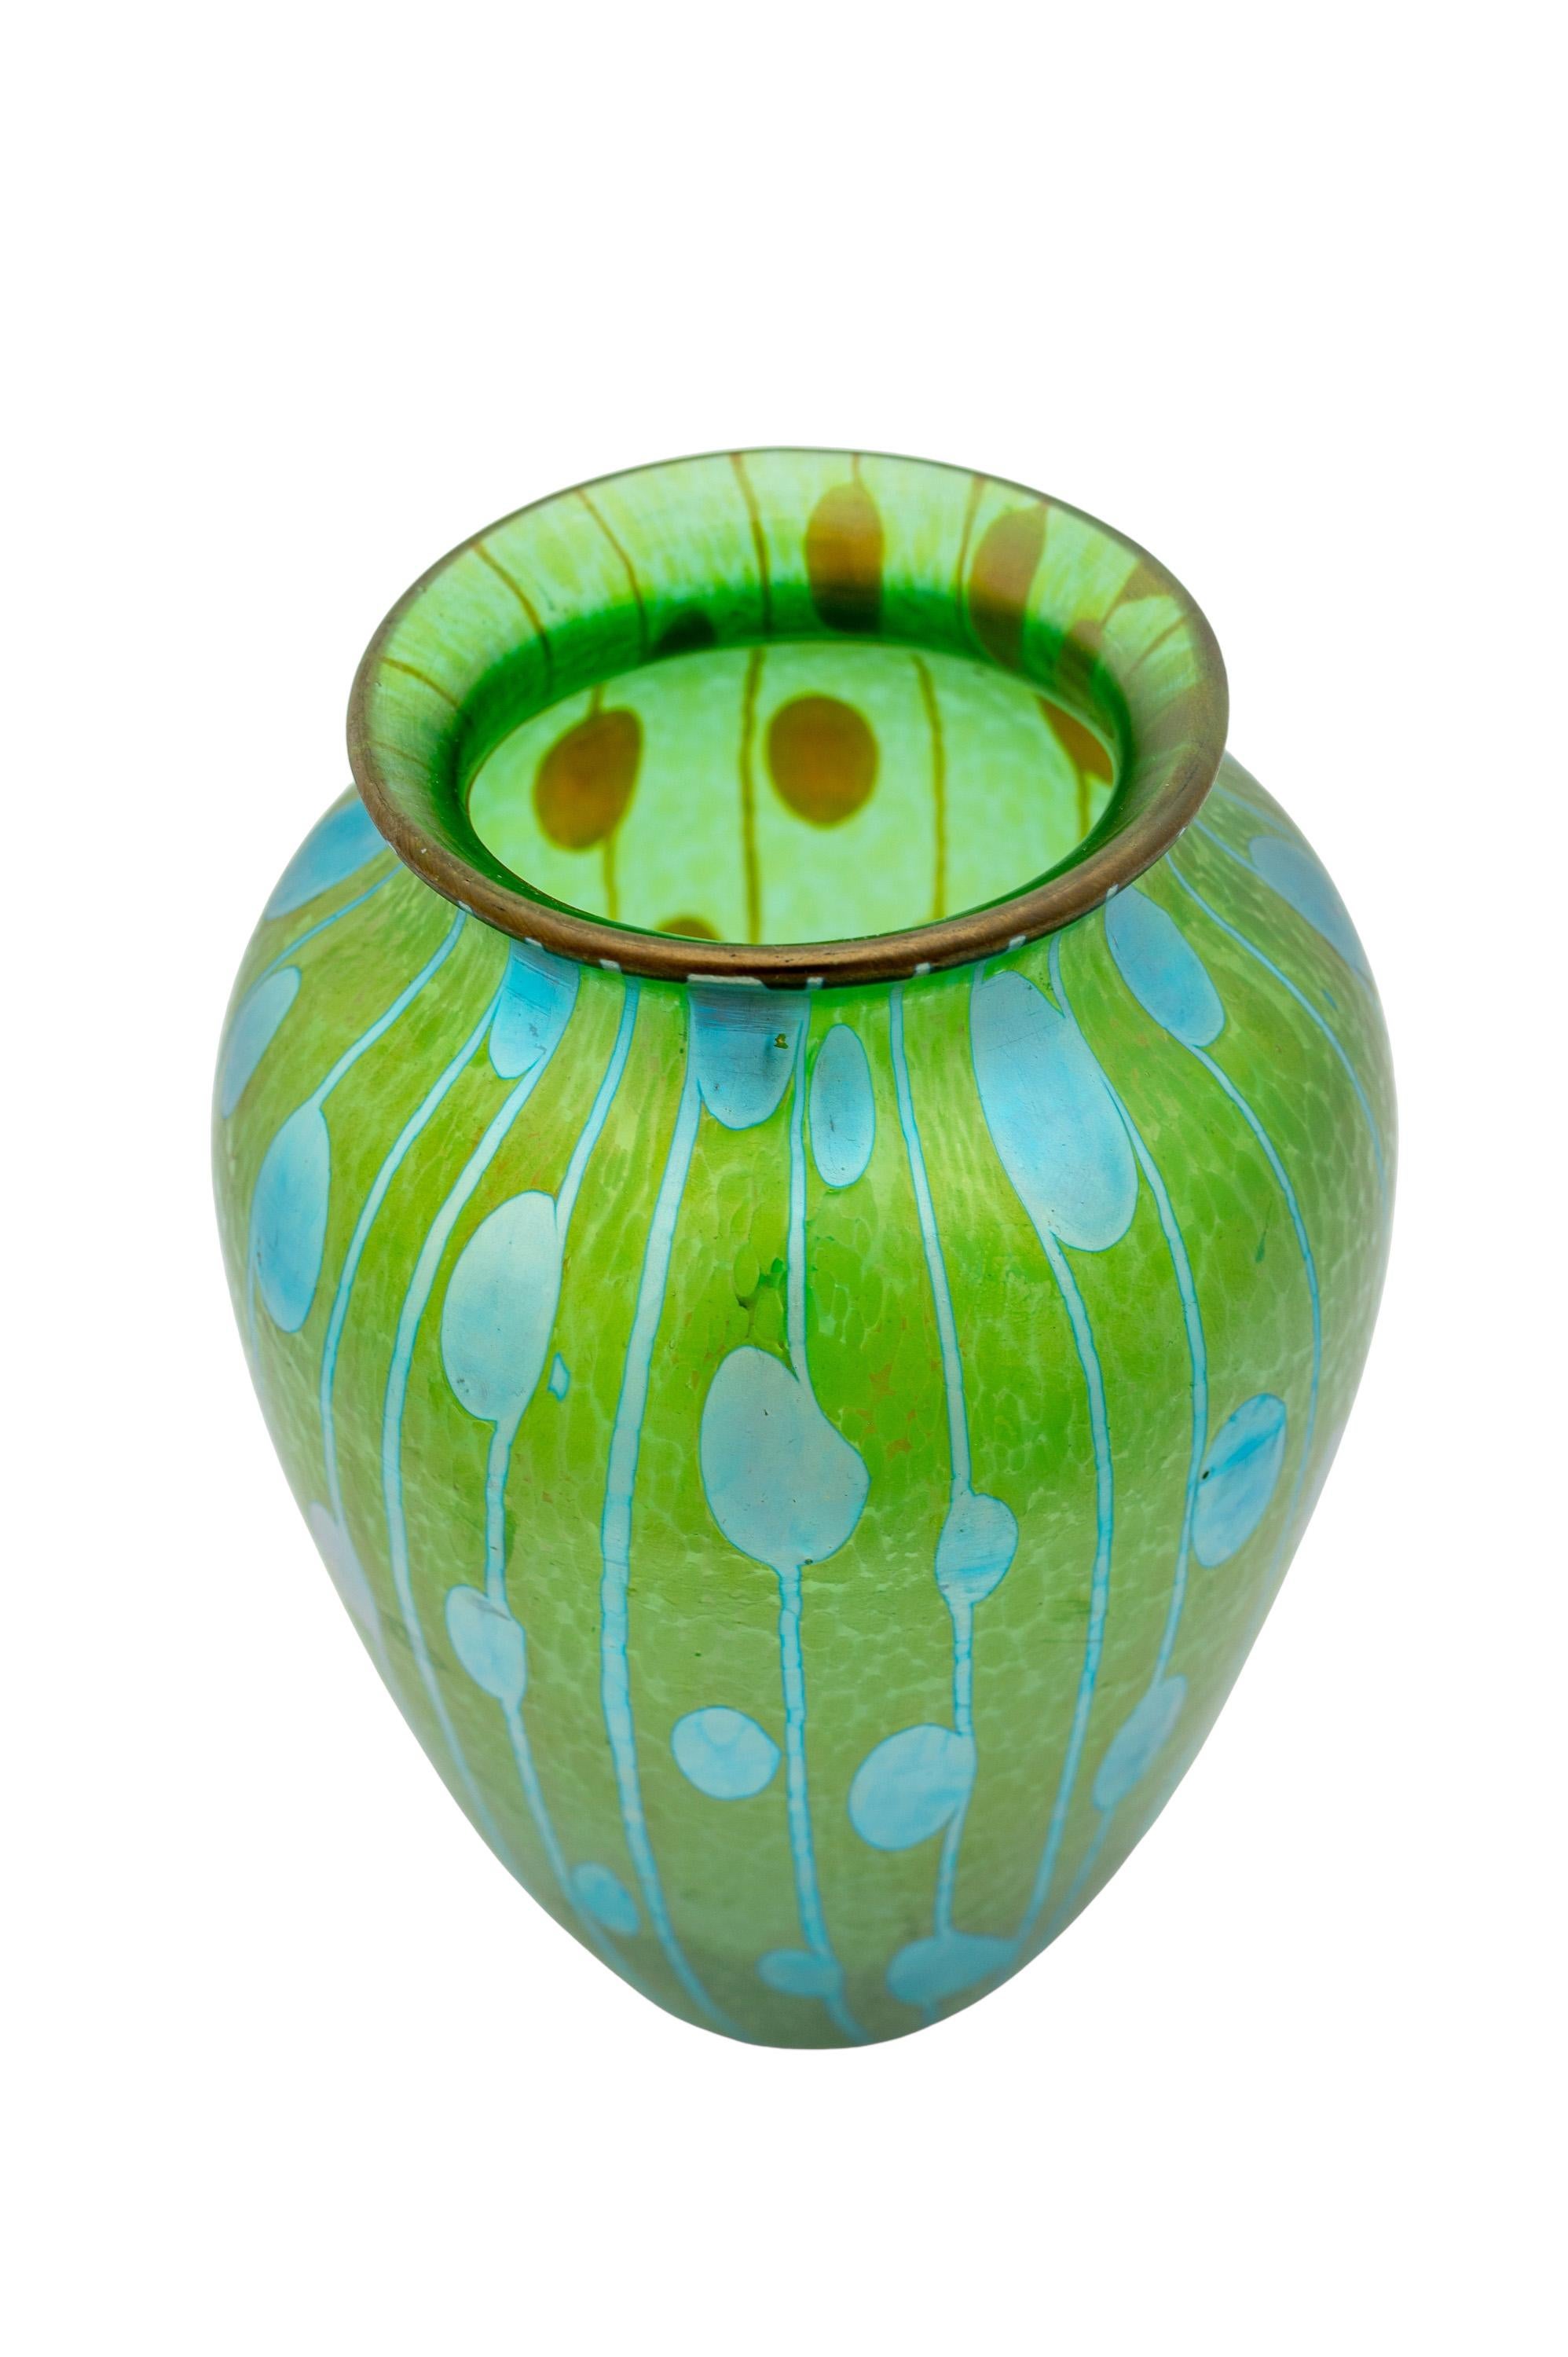 Jugendstil Bohemian Glass Vase Loetz Koloman Moser circa 1900 Blue Green For Sale